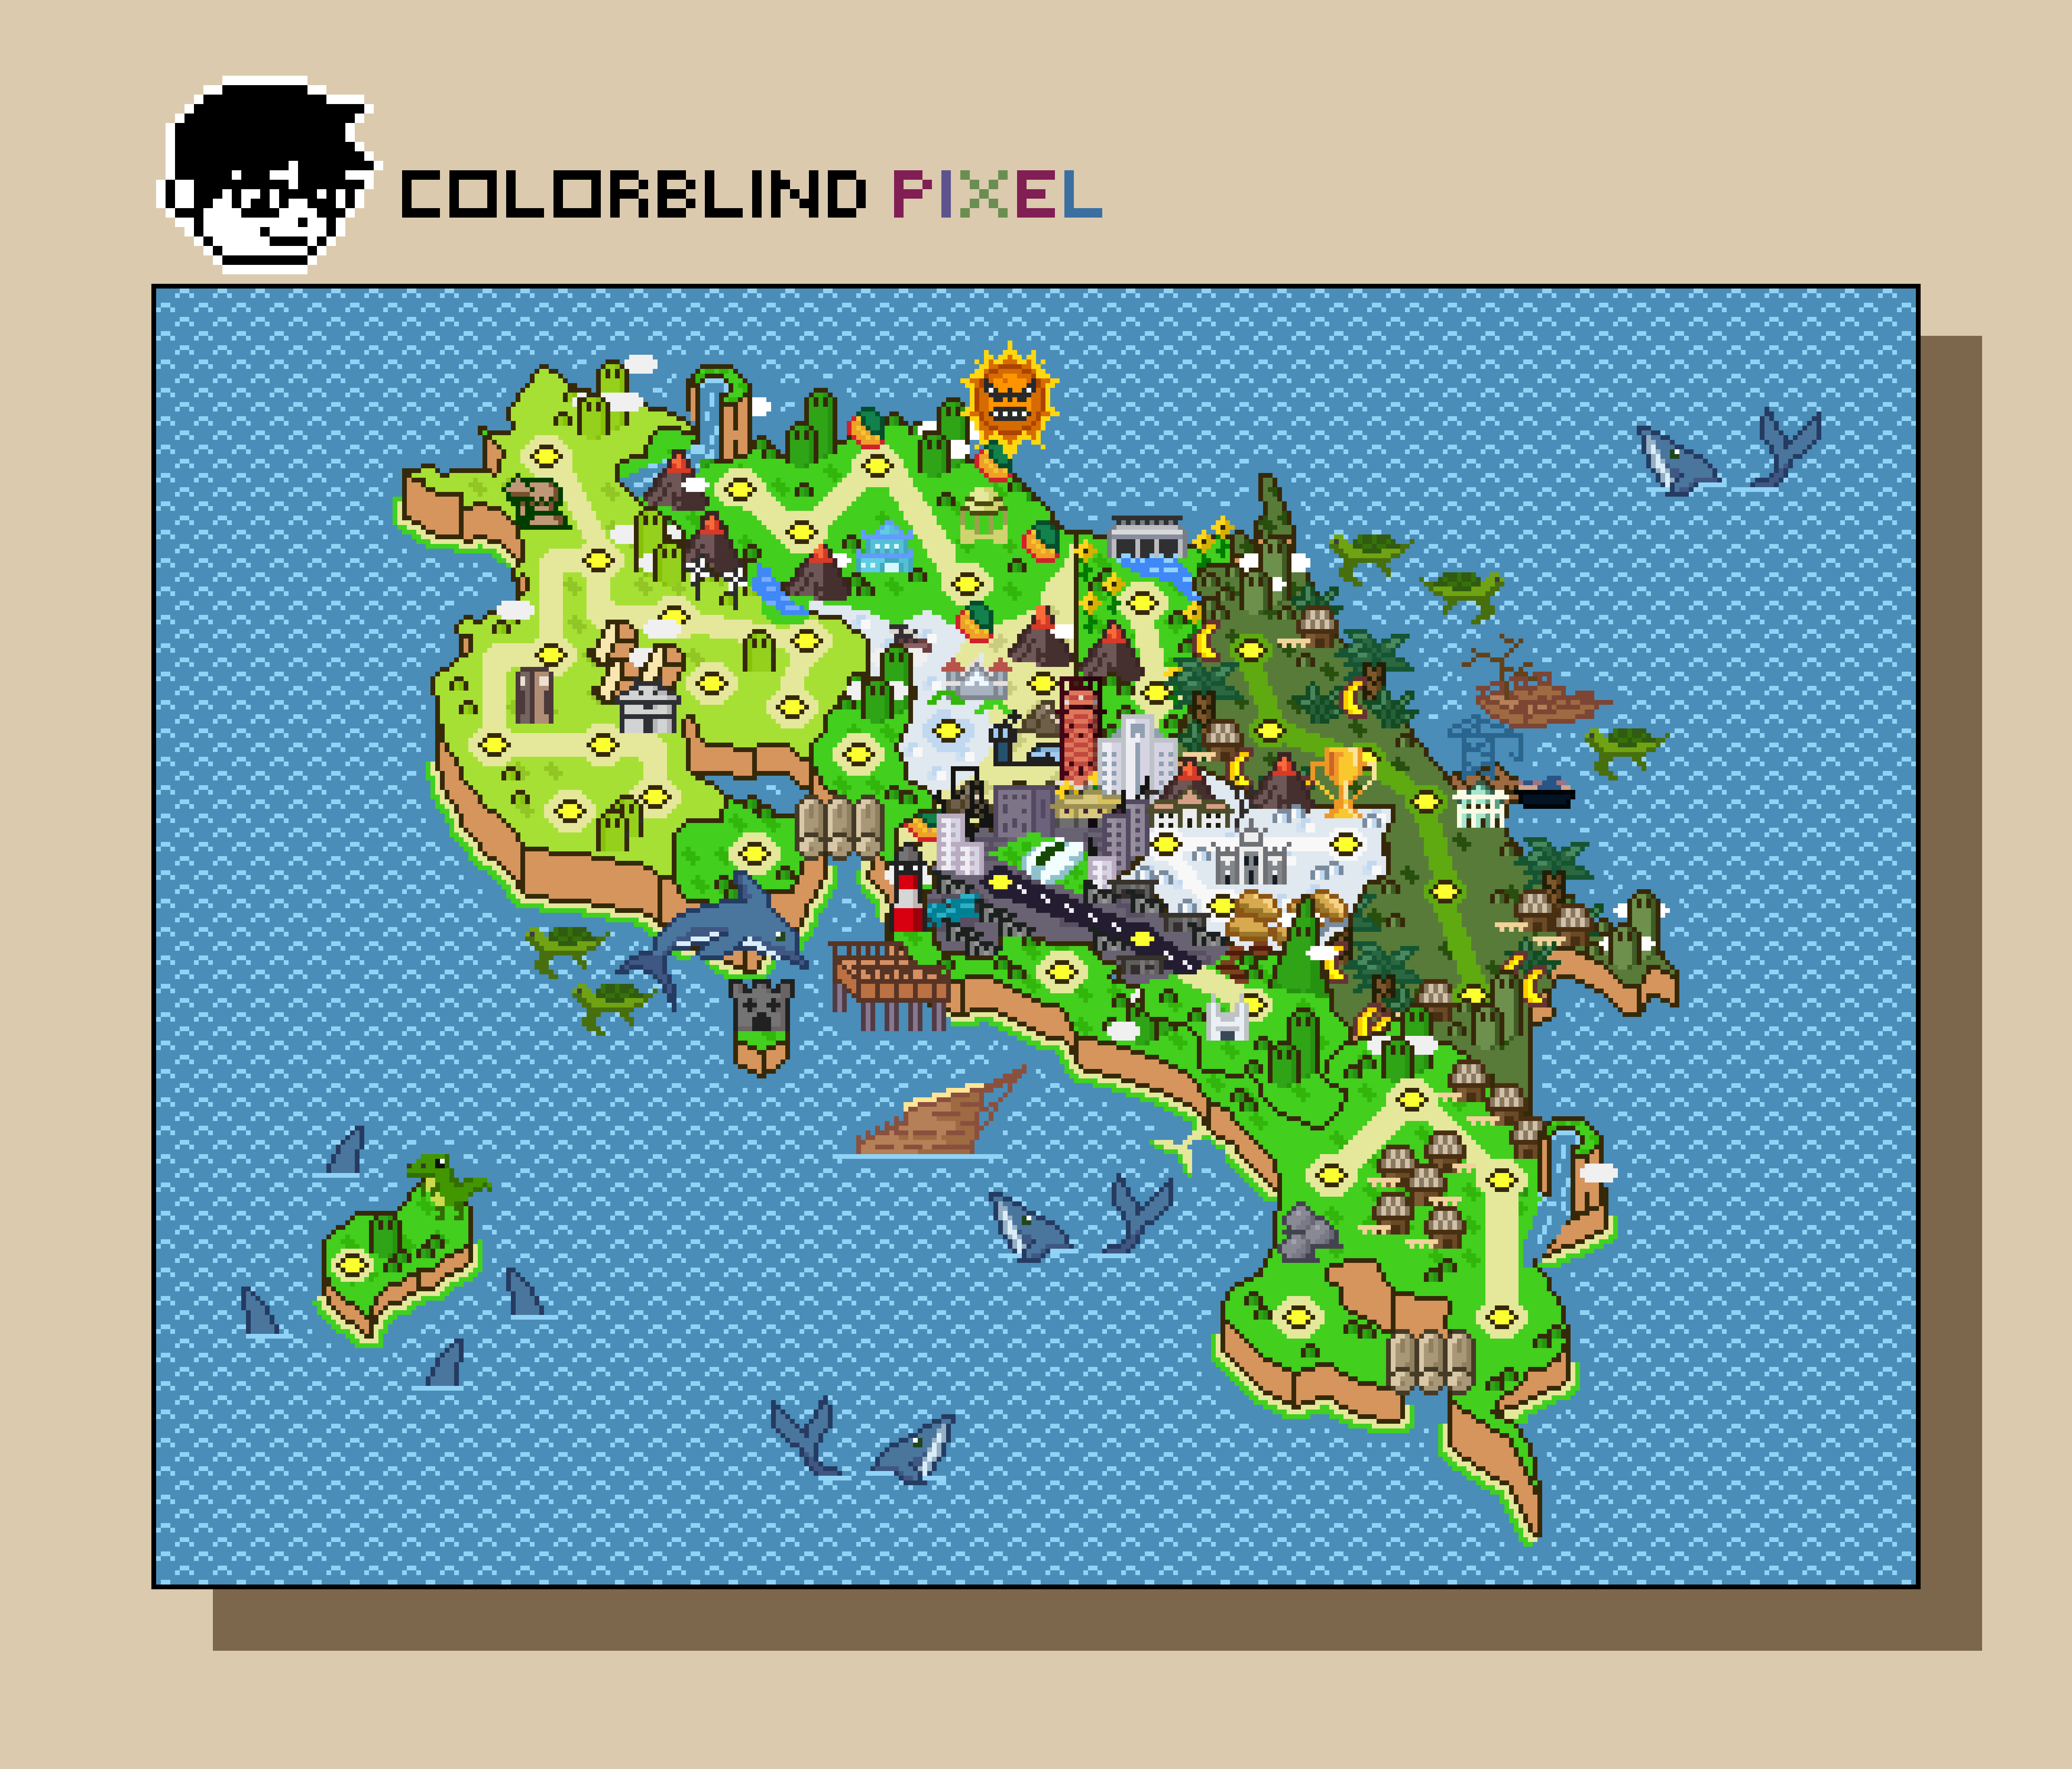 Dentro del mapa de Costa Rica, Colorblind Pixel incluyó elementos como volcanes y montañas, así como edificios emblemáticos de cada provincia.